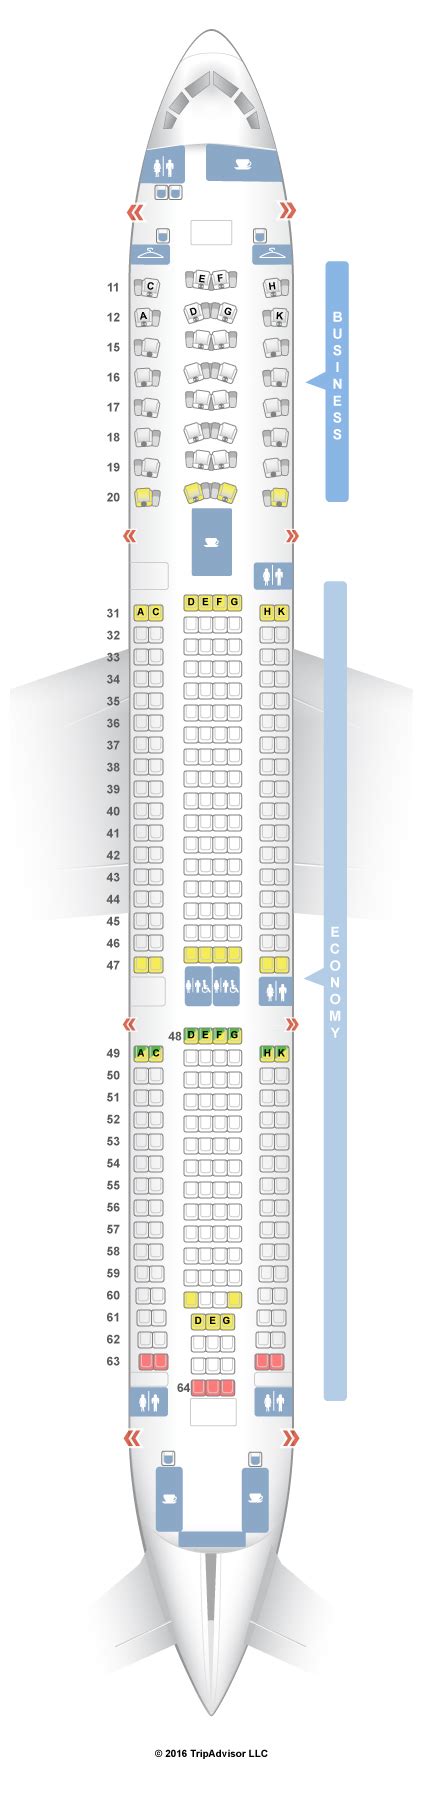 Seatguru Seat Map Hainan Airlines Airbus A330 300 333